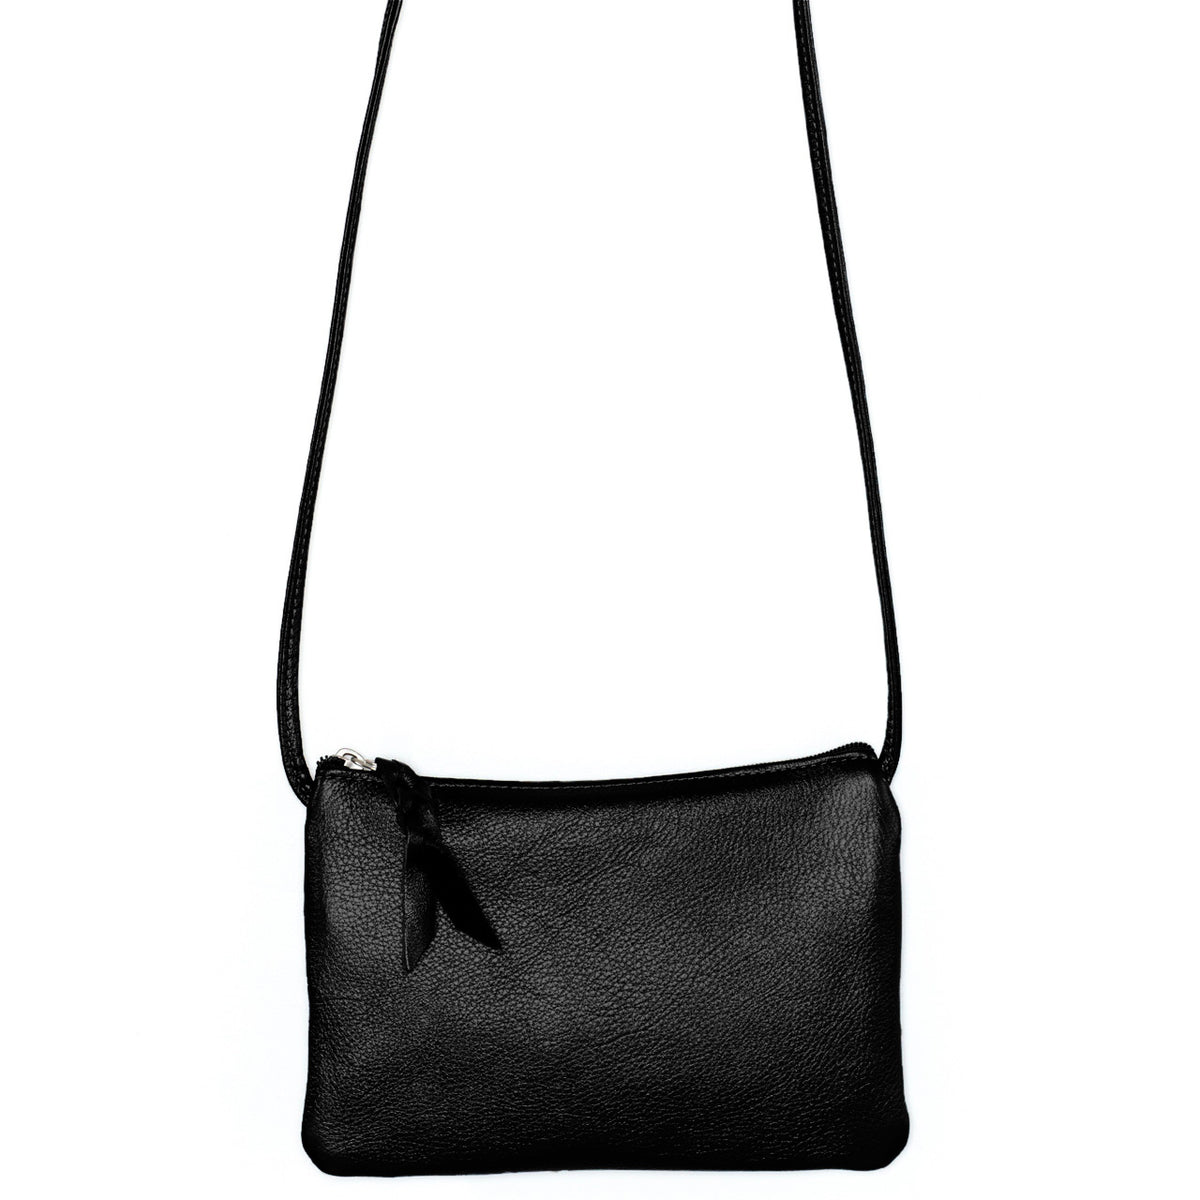 SVEN Style No. 008 Crossbody/Shoulder Bag black leather